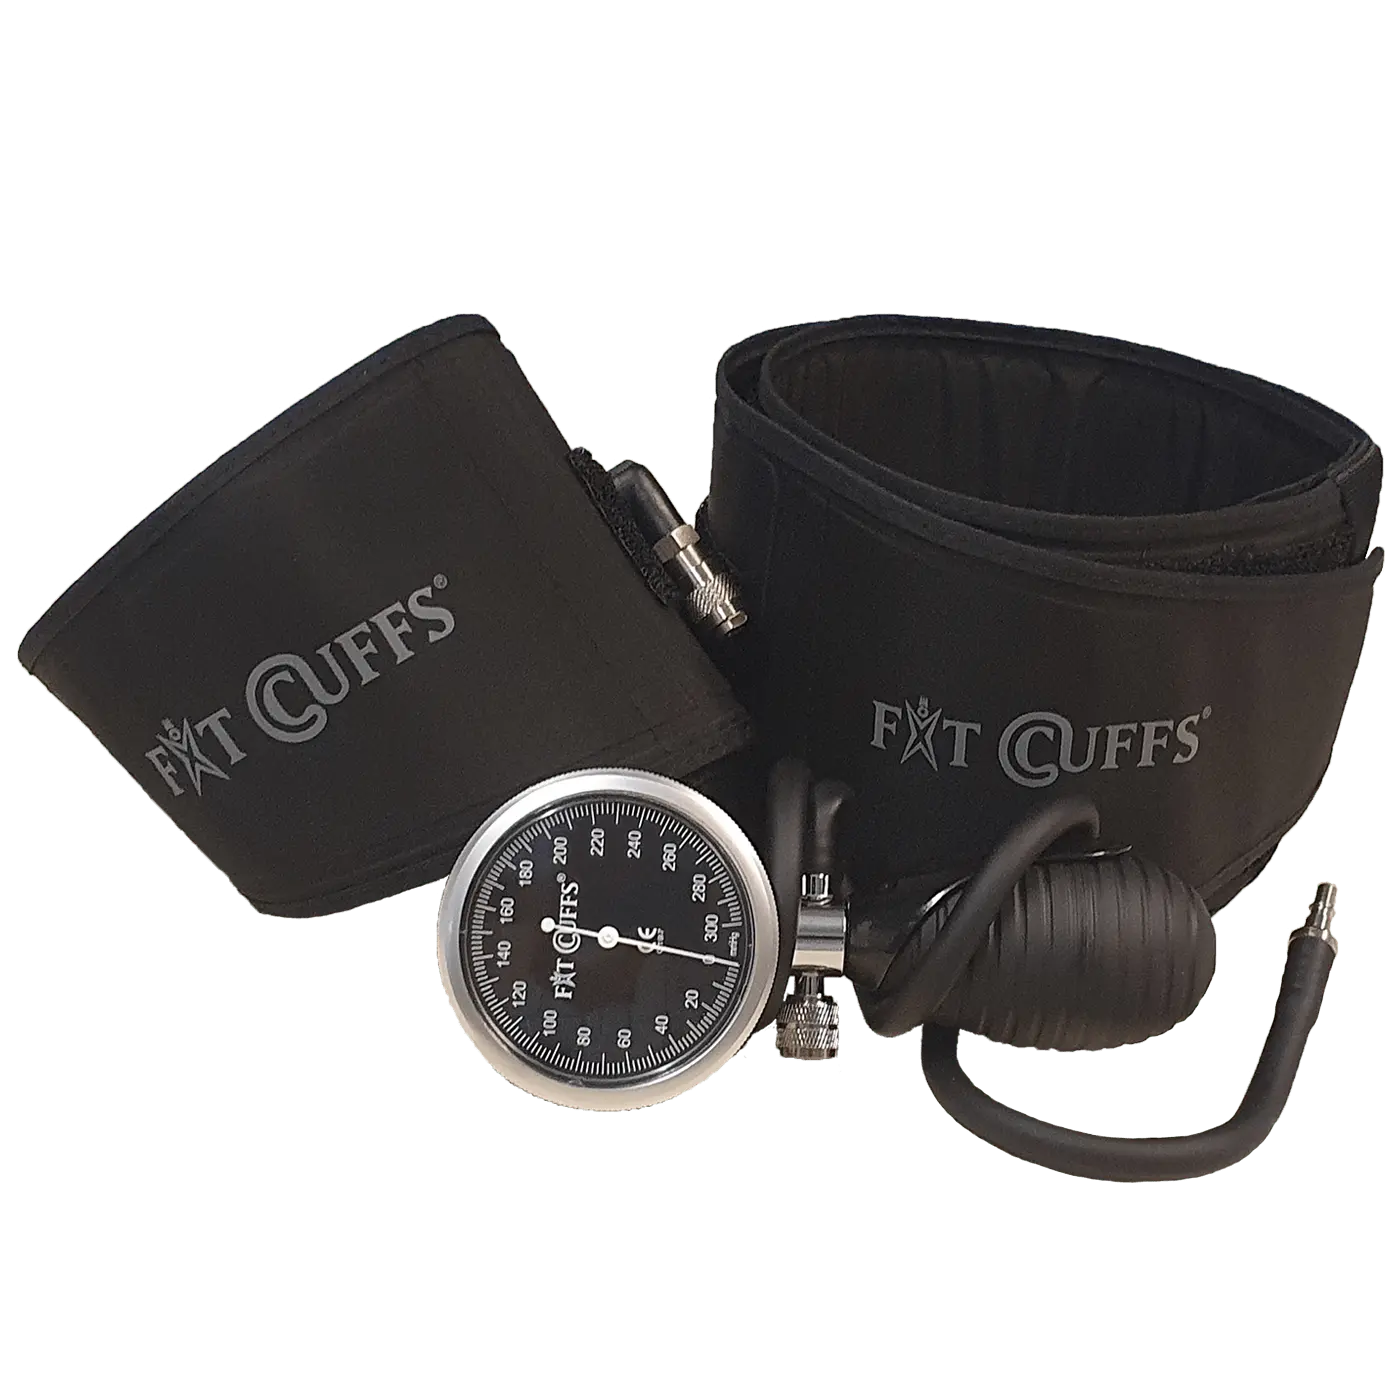 Billede af Fit Cuffs - Performance Lower V3.1 Hard Case (Limited Edition) - Standard - Black